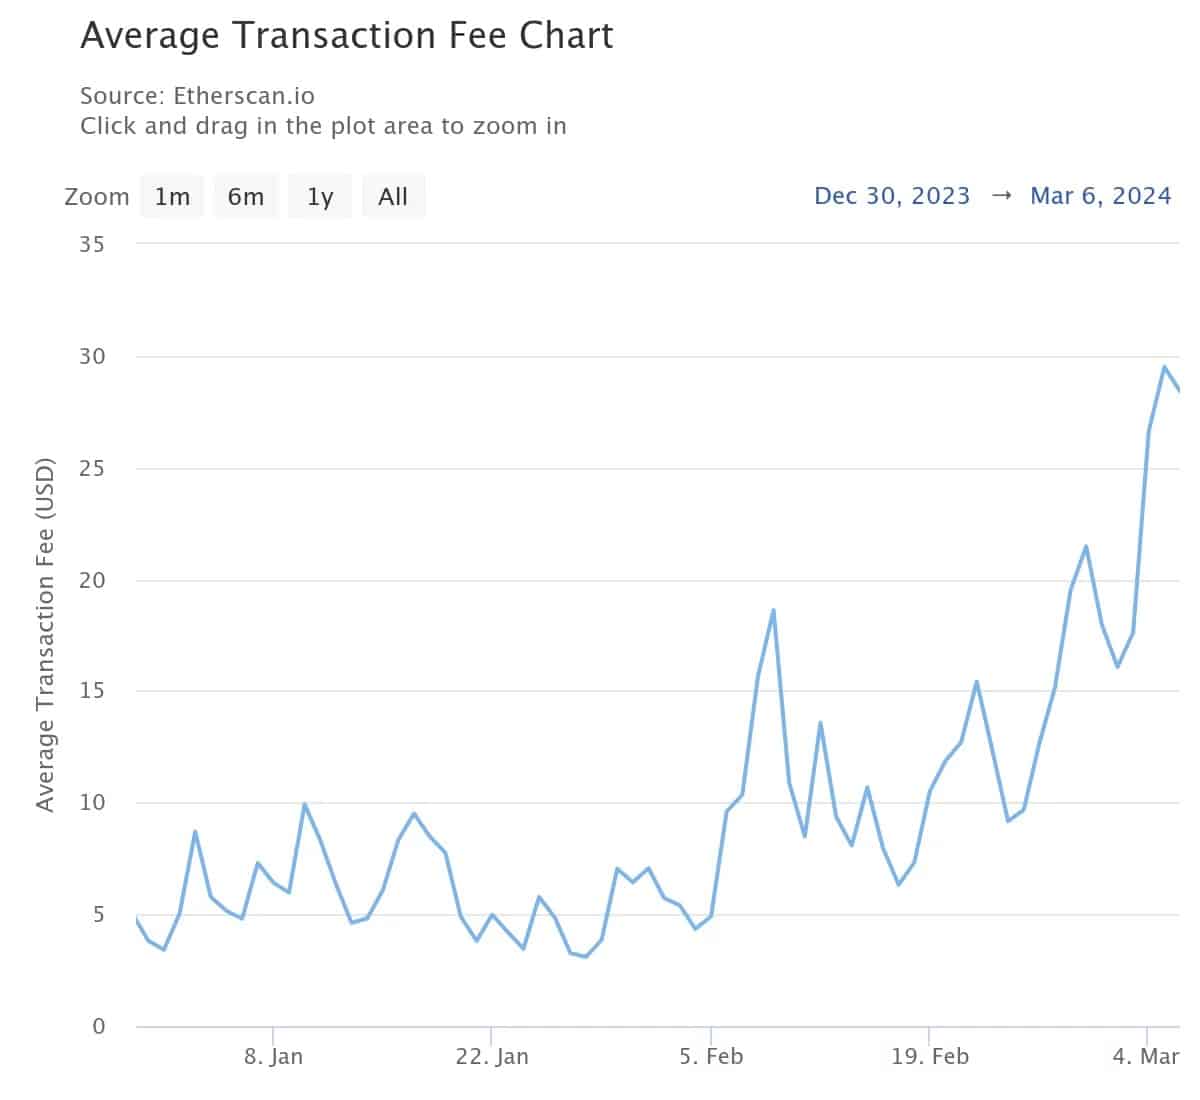 Figura 2 - Coste medio de una transacción de Ethereum desde principios de año